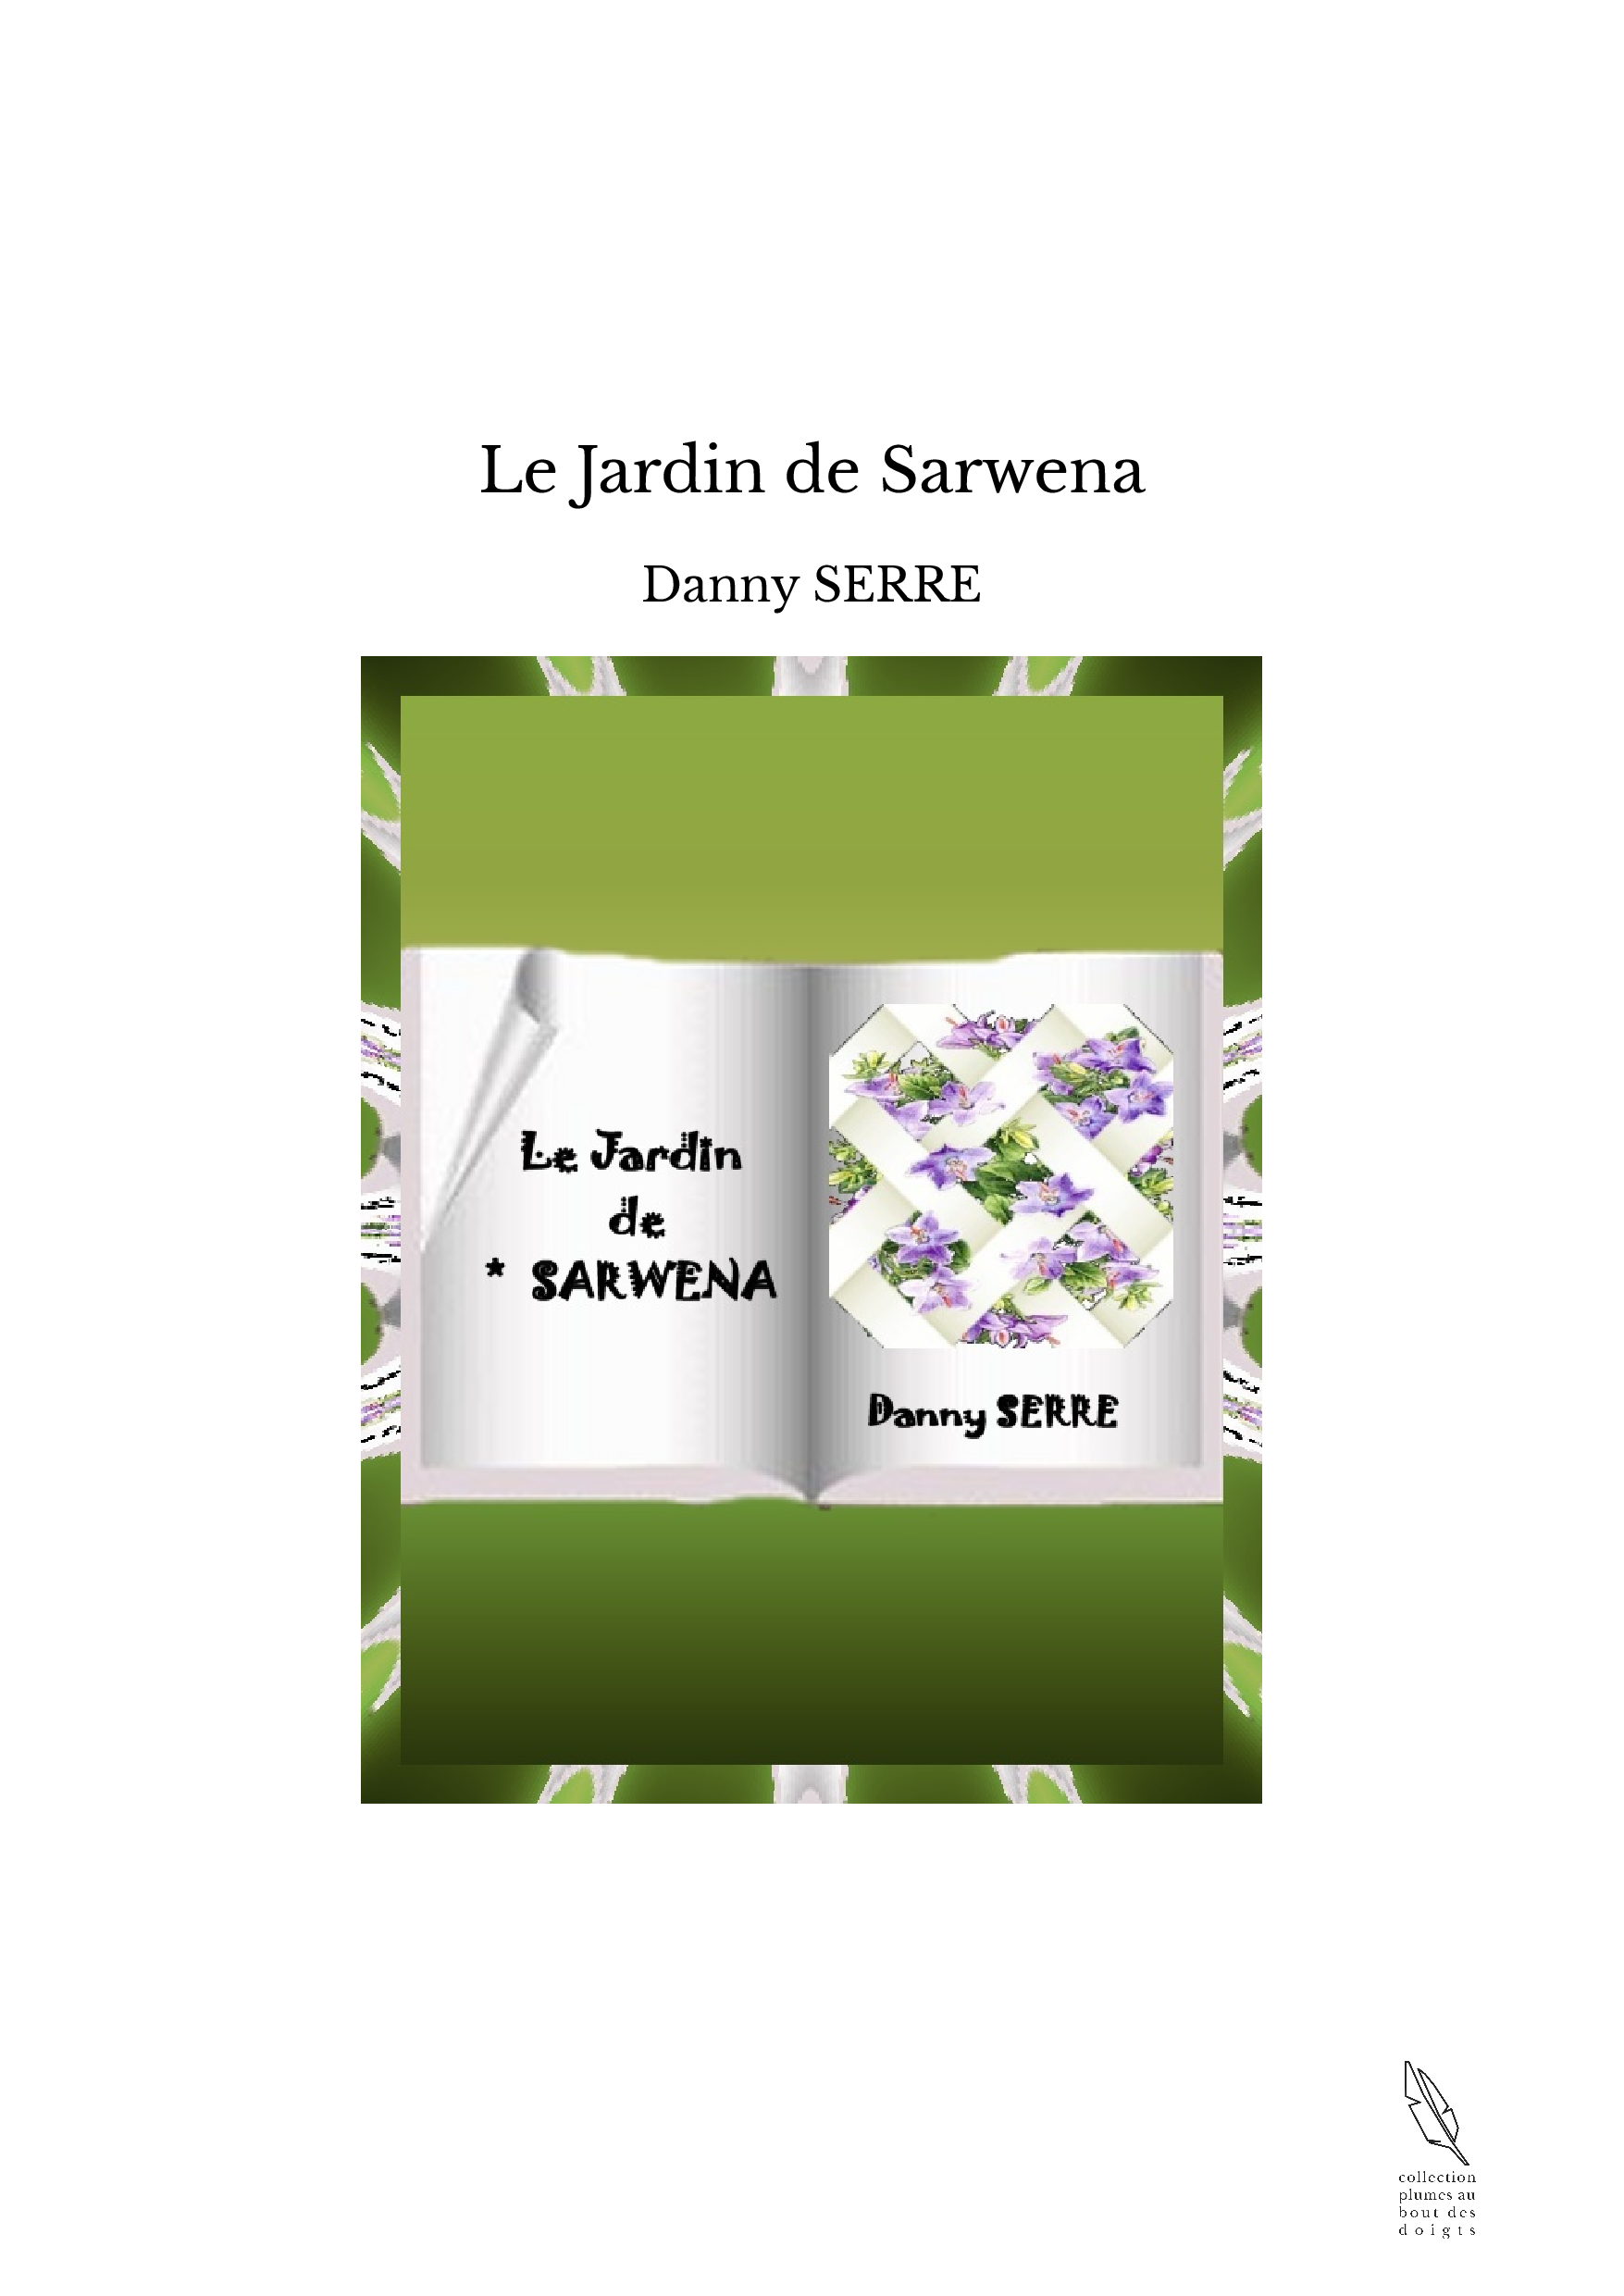 Le Jardin de Sarwena